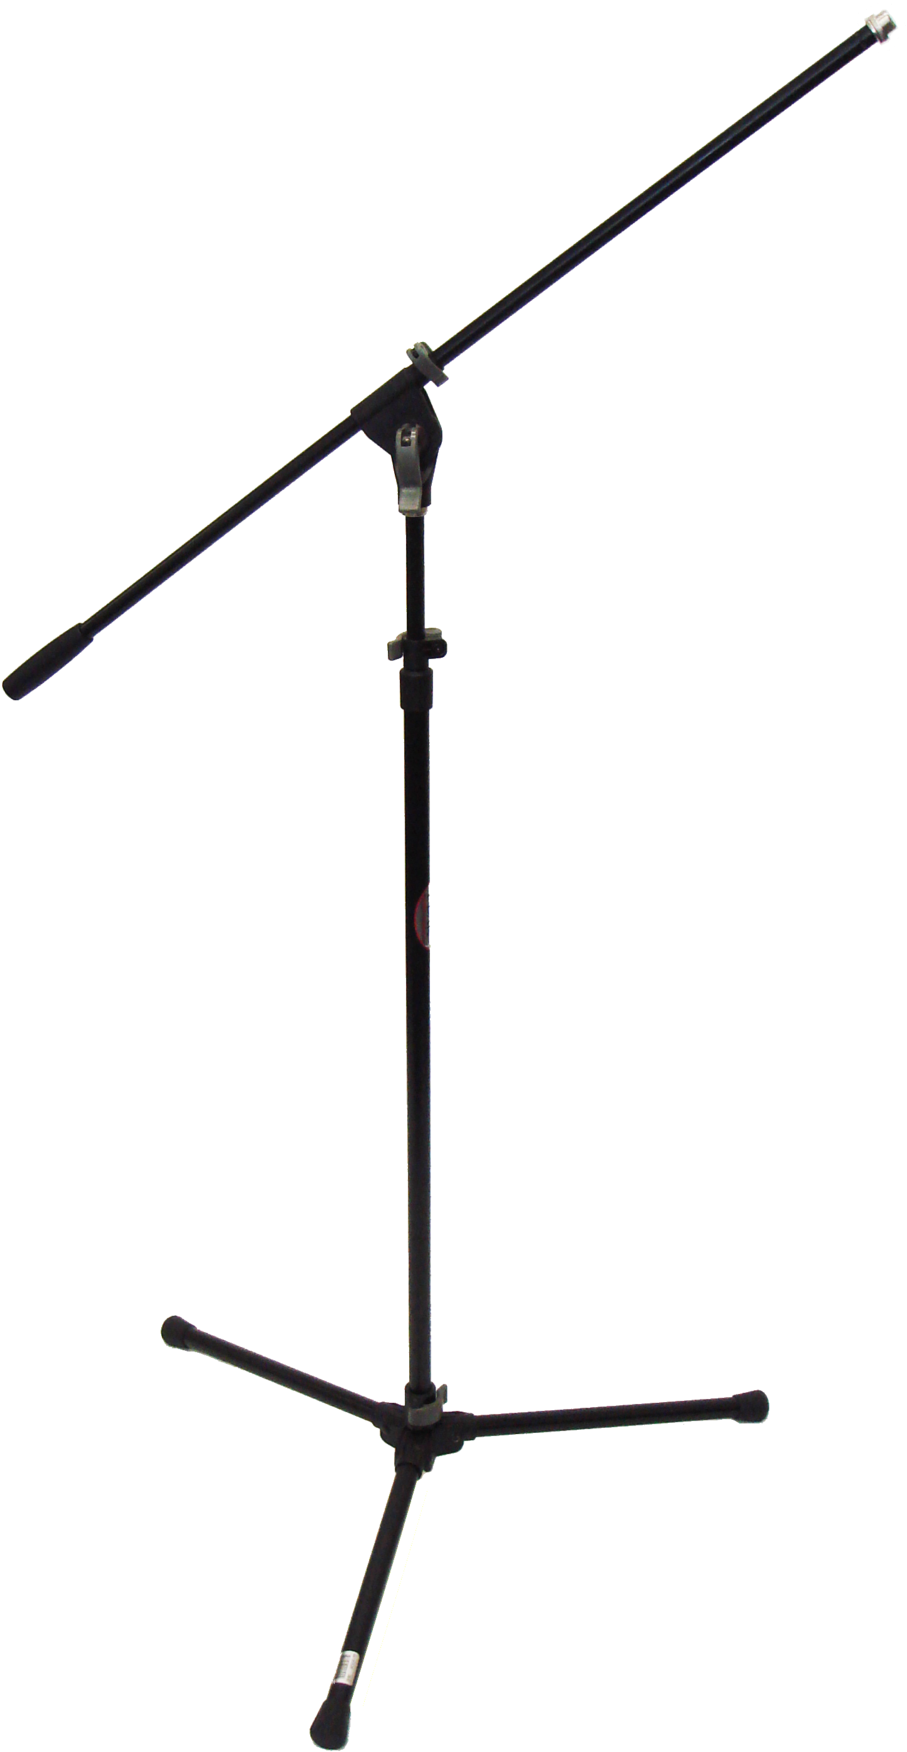 Fondo de imagen de la imagen del micrófono del soporte del escenario